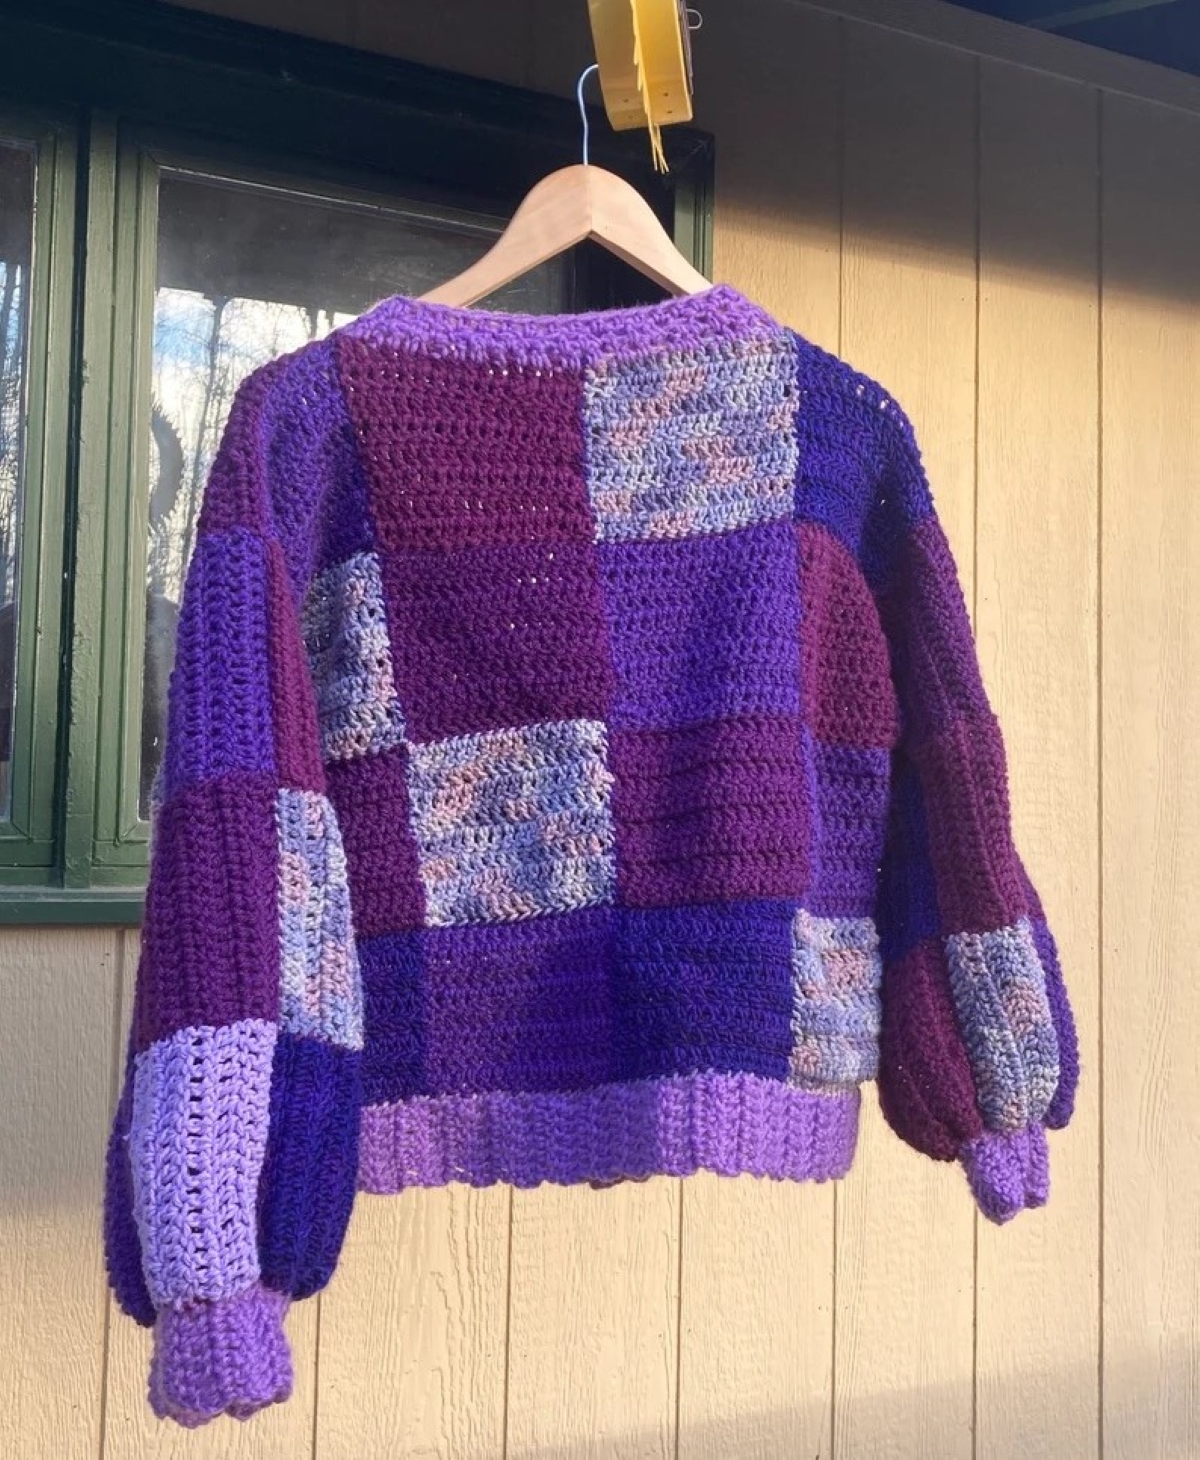 crochet patterns for beginners - patchwork crochet sweater